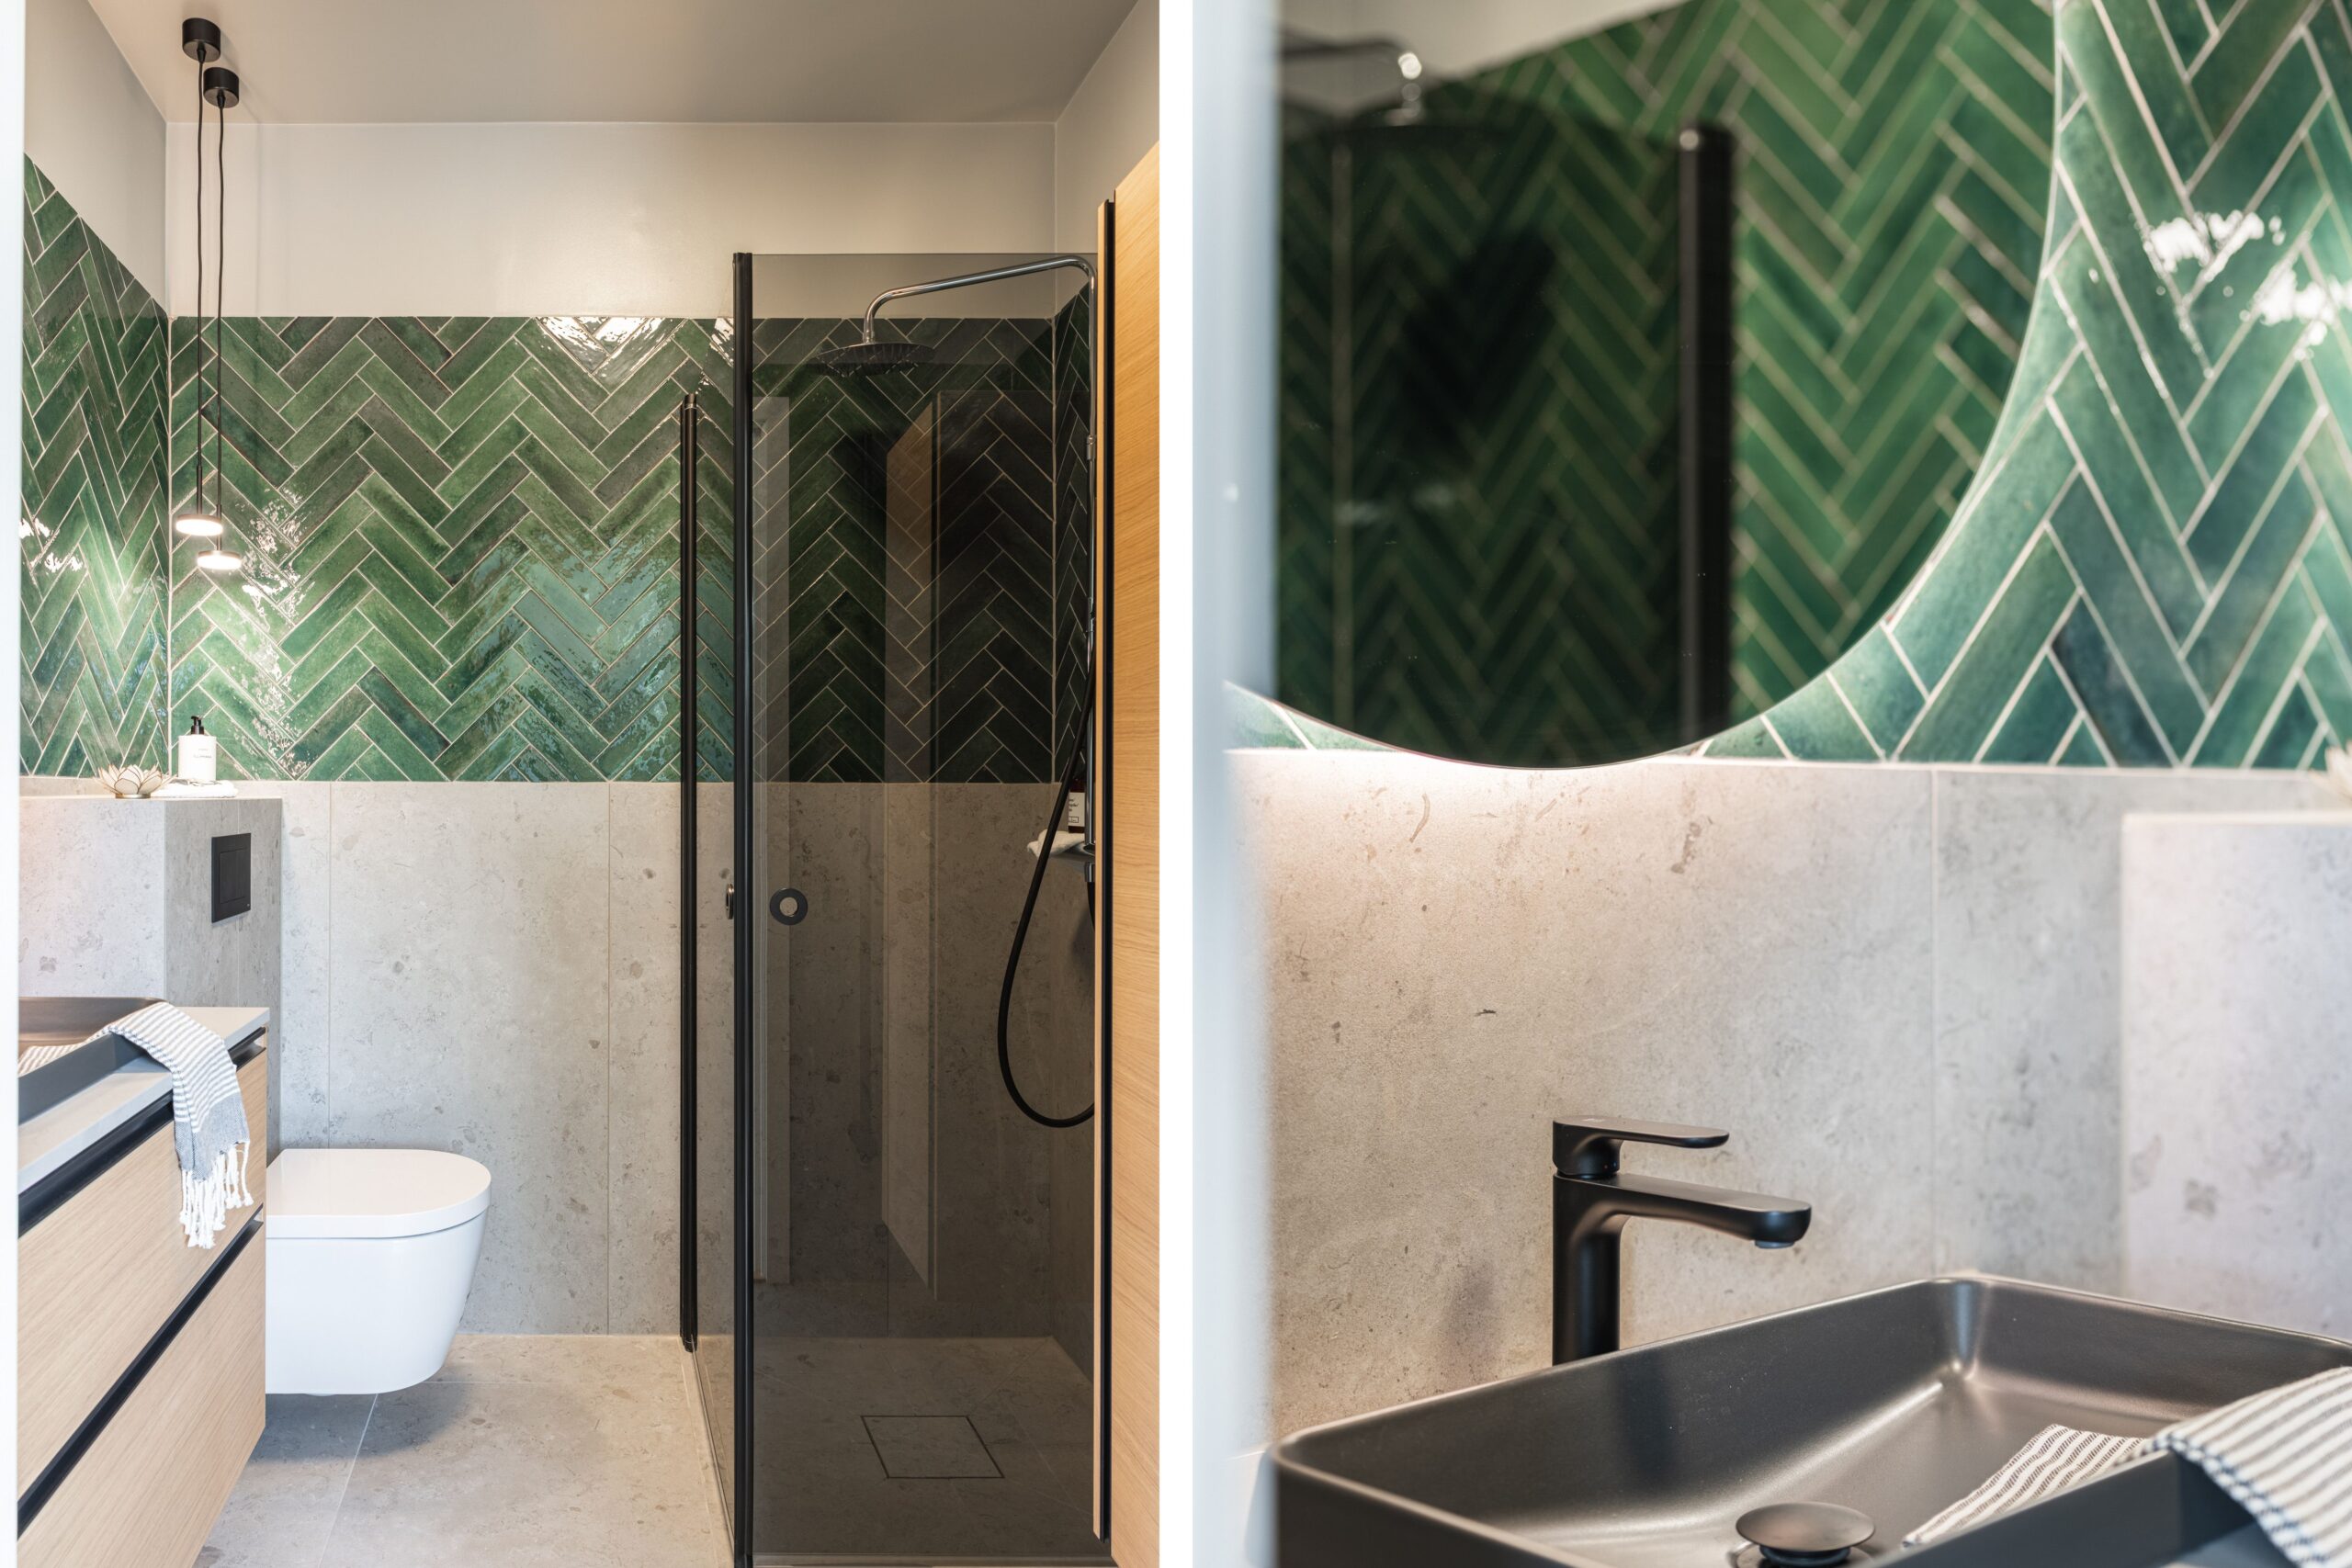 Ett elegant badrum med en vägg av grönt fiskbensmönstrat kakel, en minimalistisk toalett, och en mörk handfat med en svart kran.